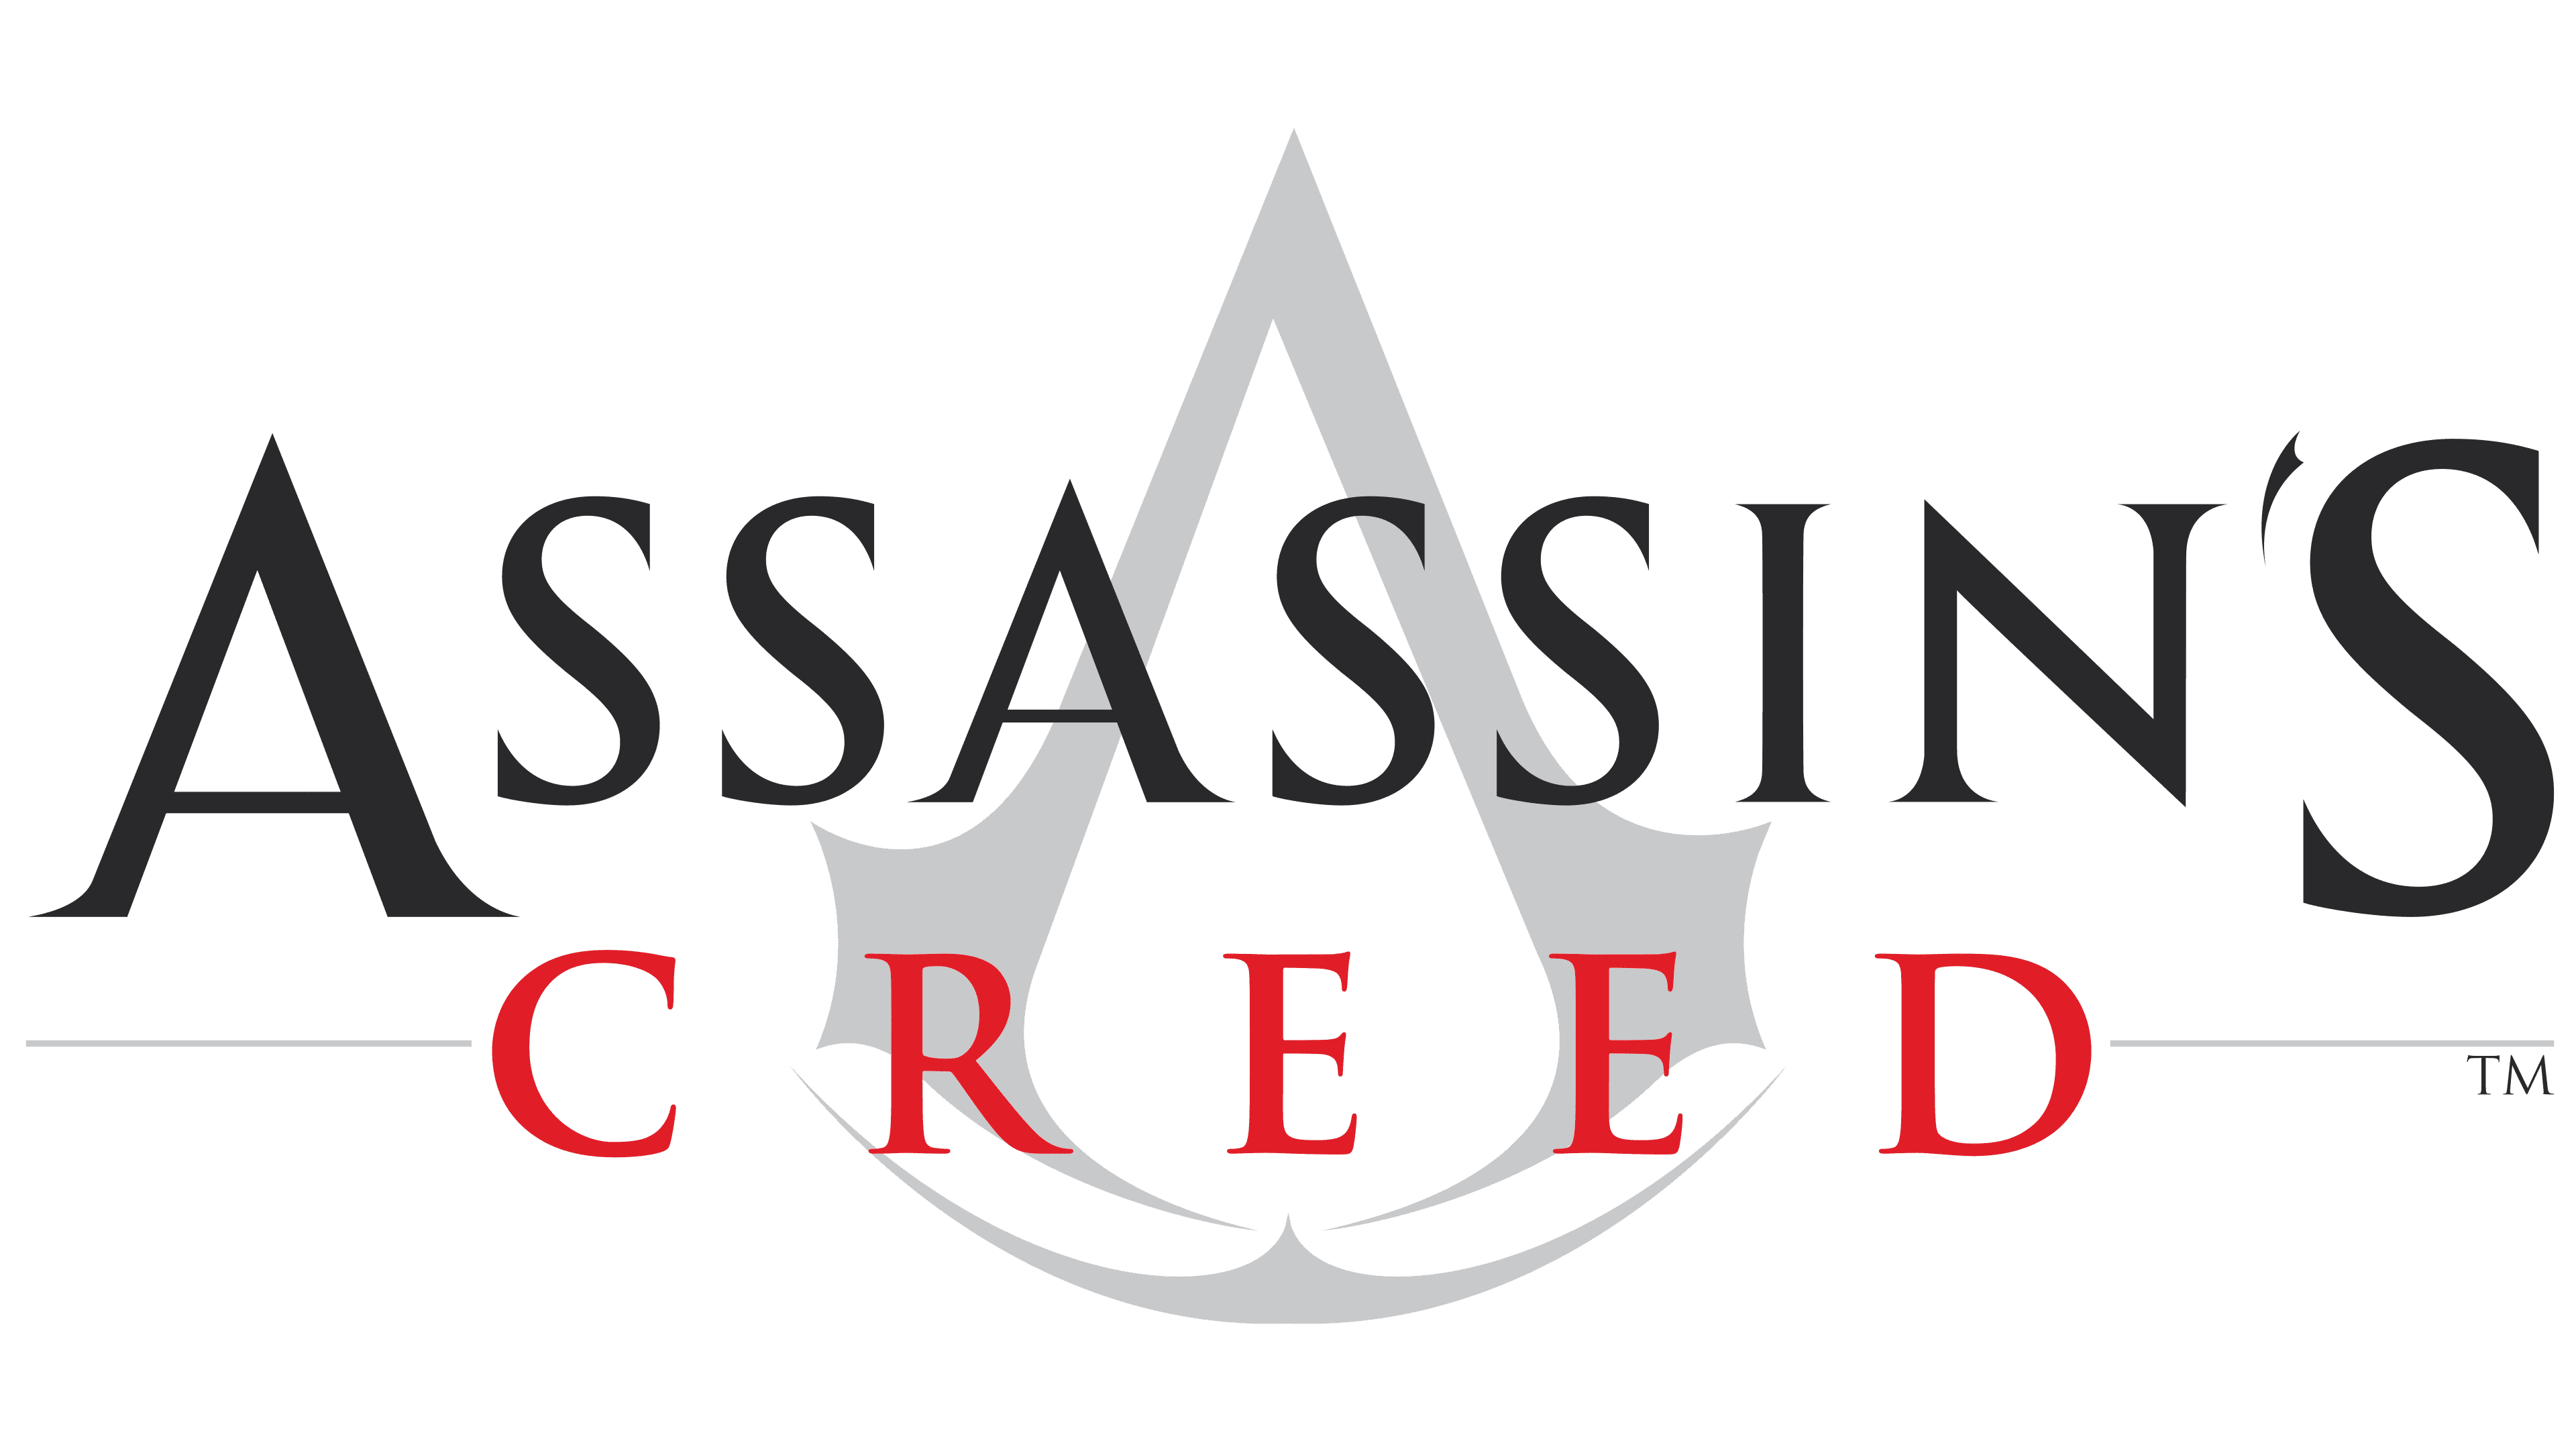 Assassin's Creed Logo | Symbol, History, PNG (3840*2160)